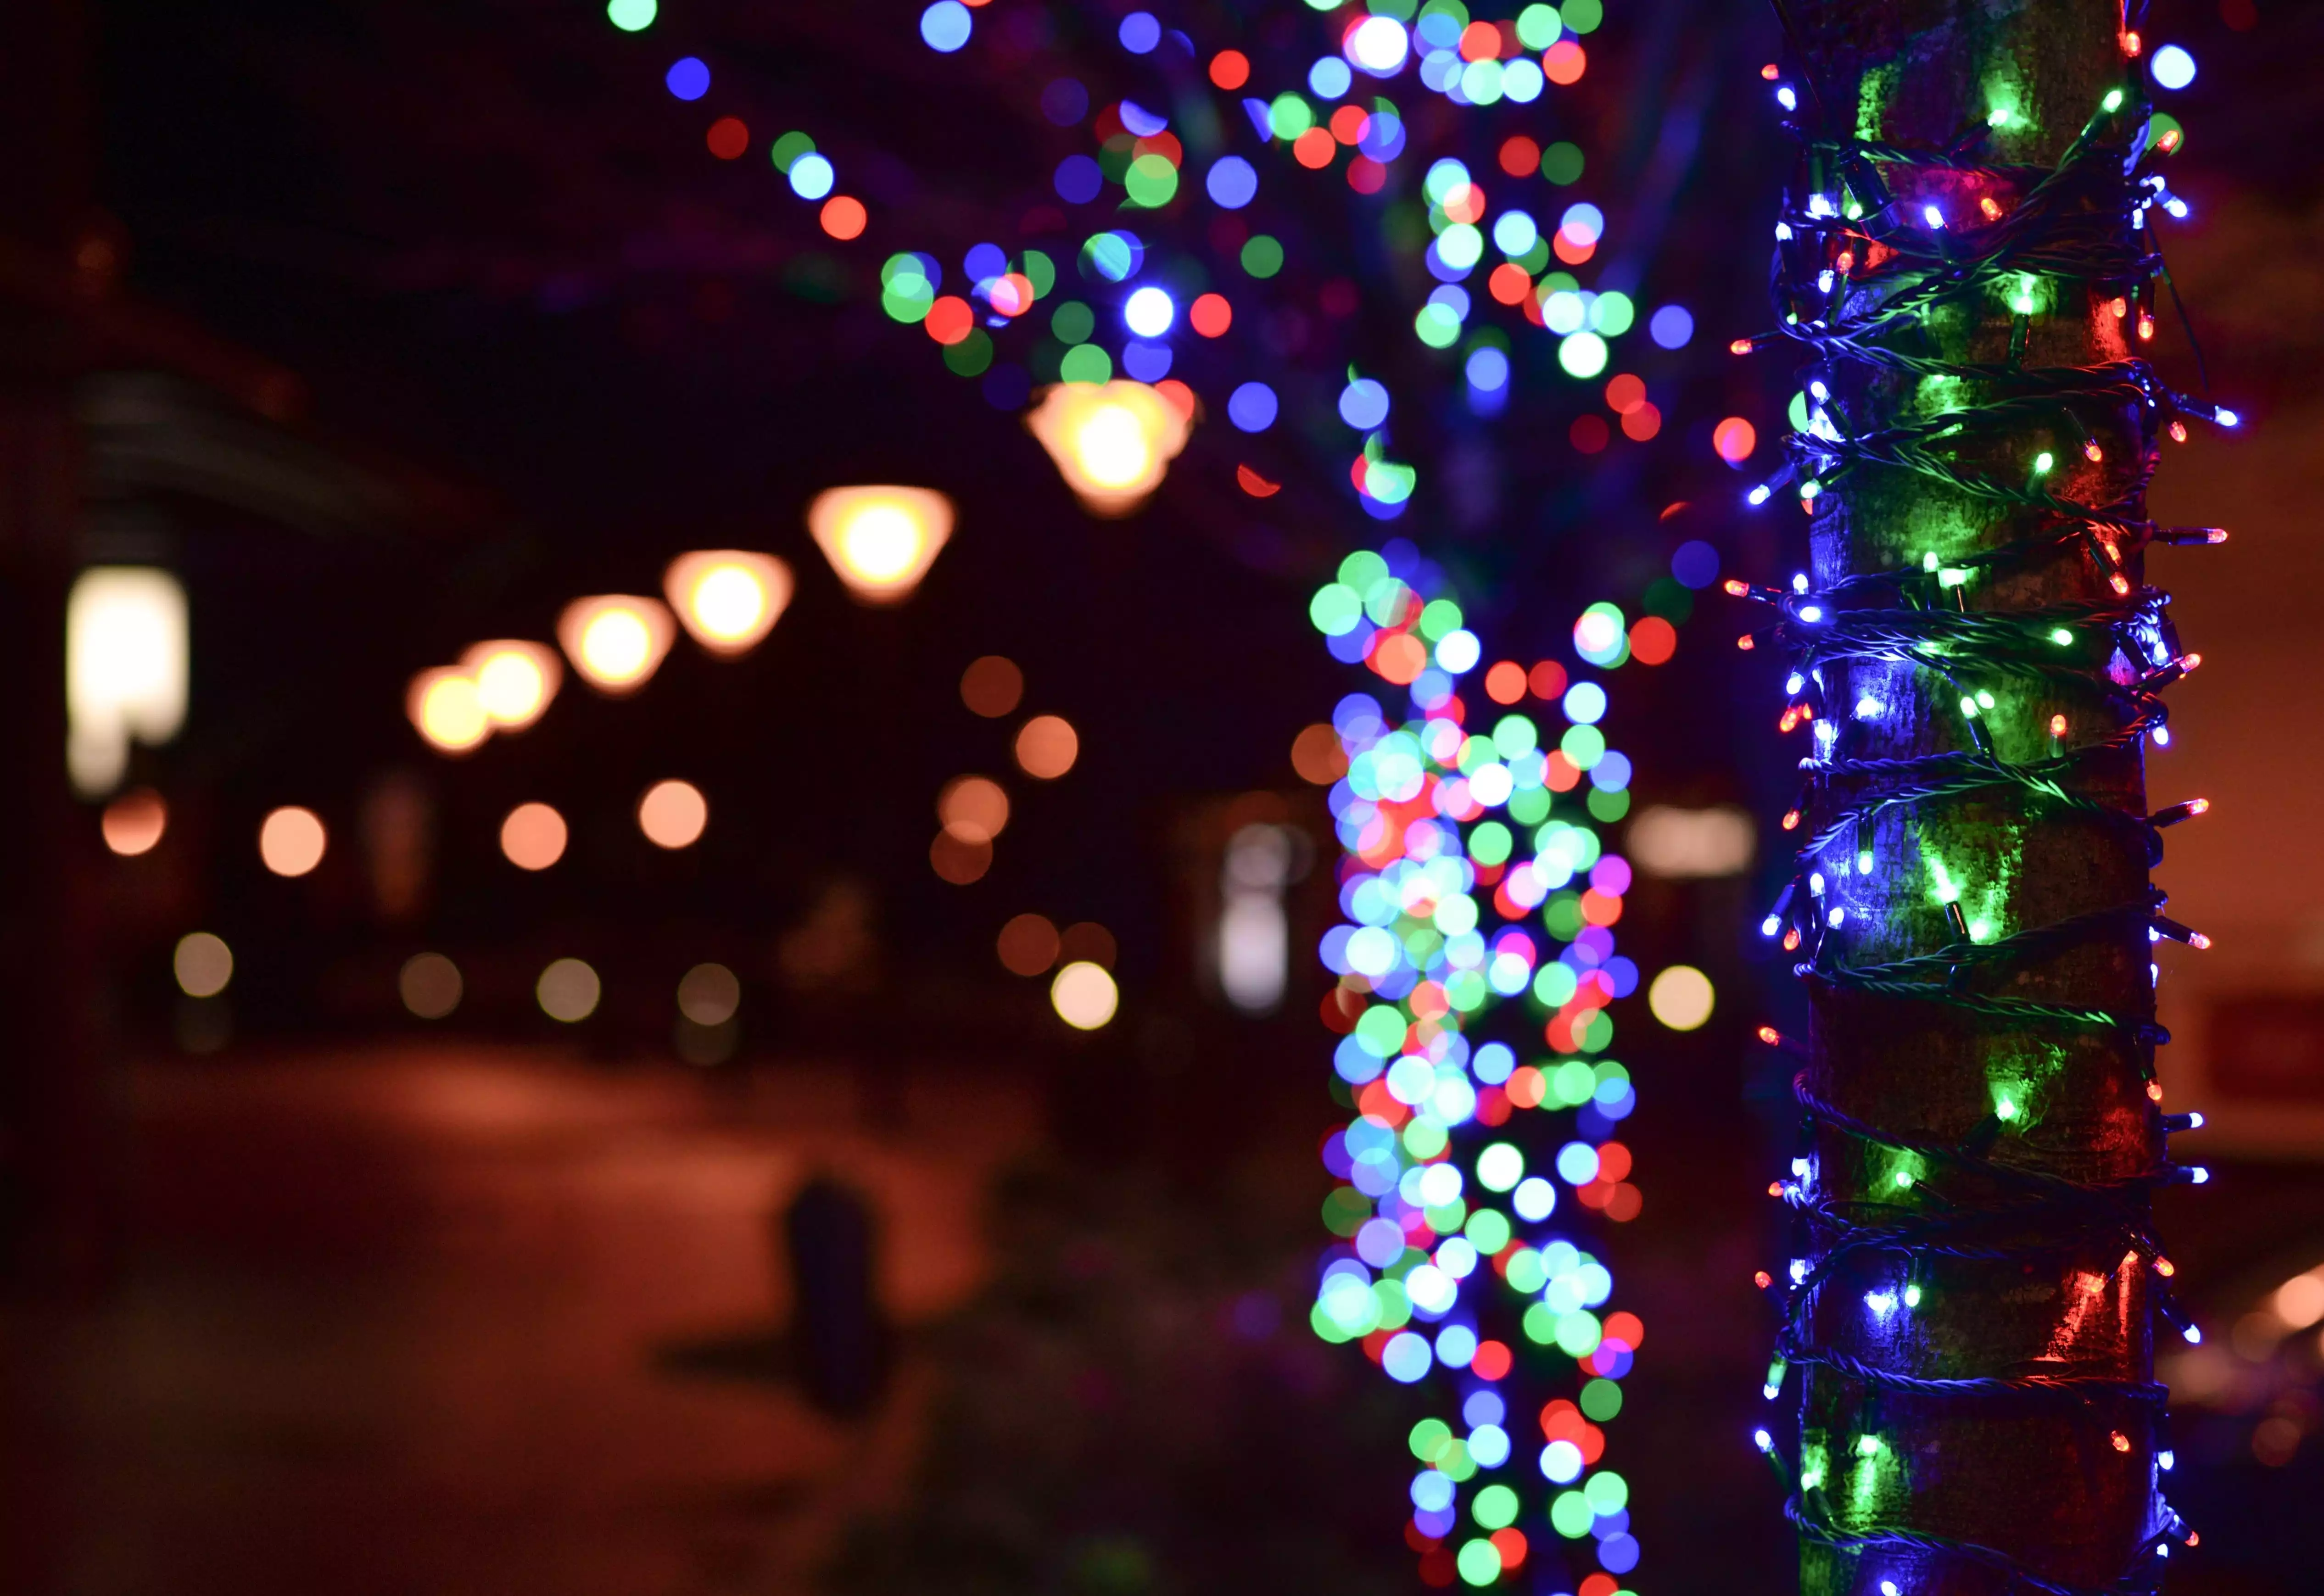 11 Spectacular Kansas City Christmas Lights Displays